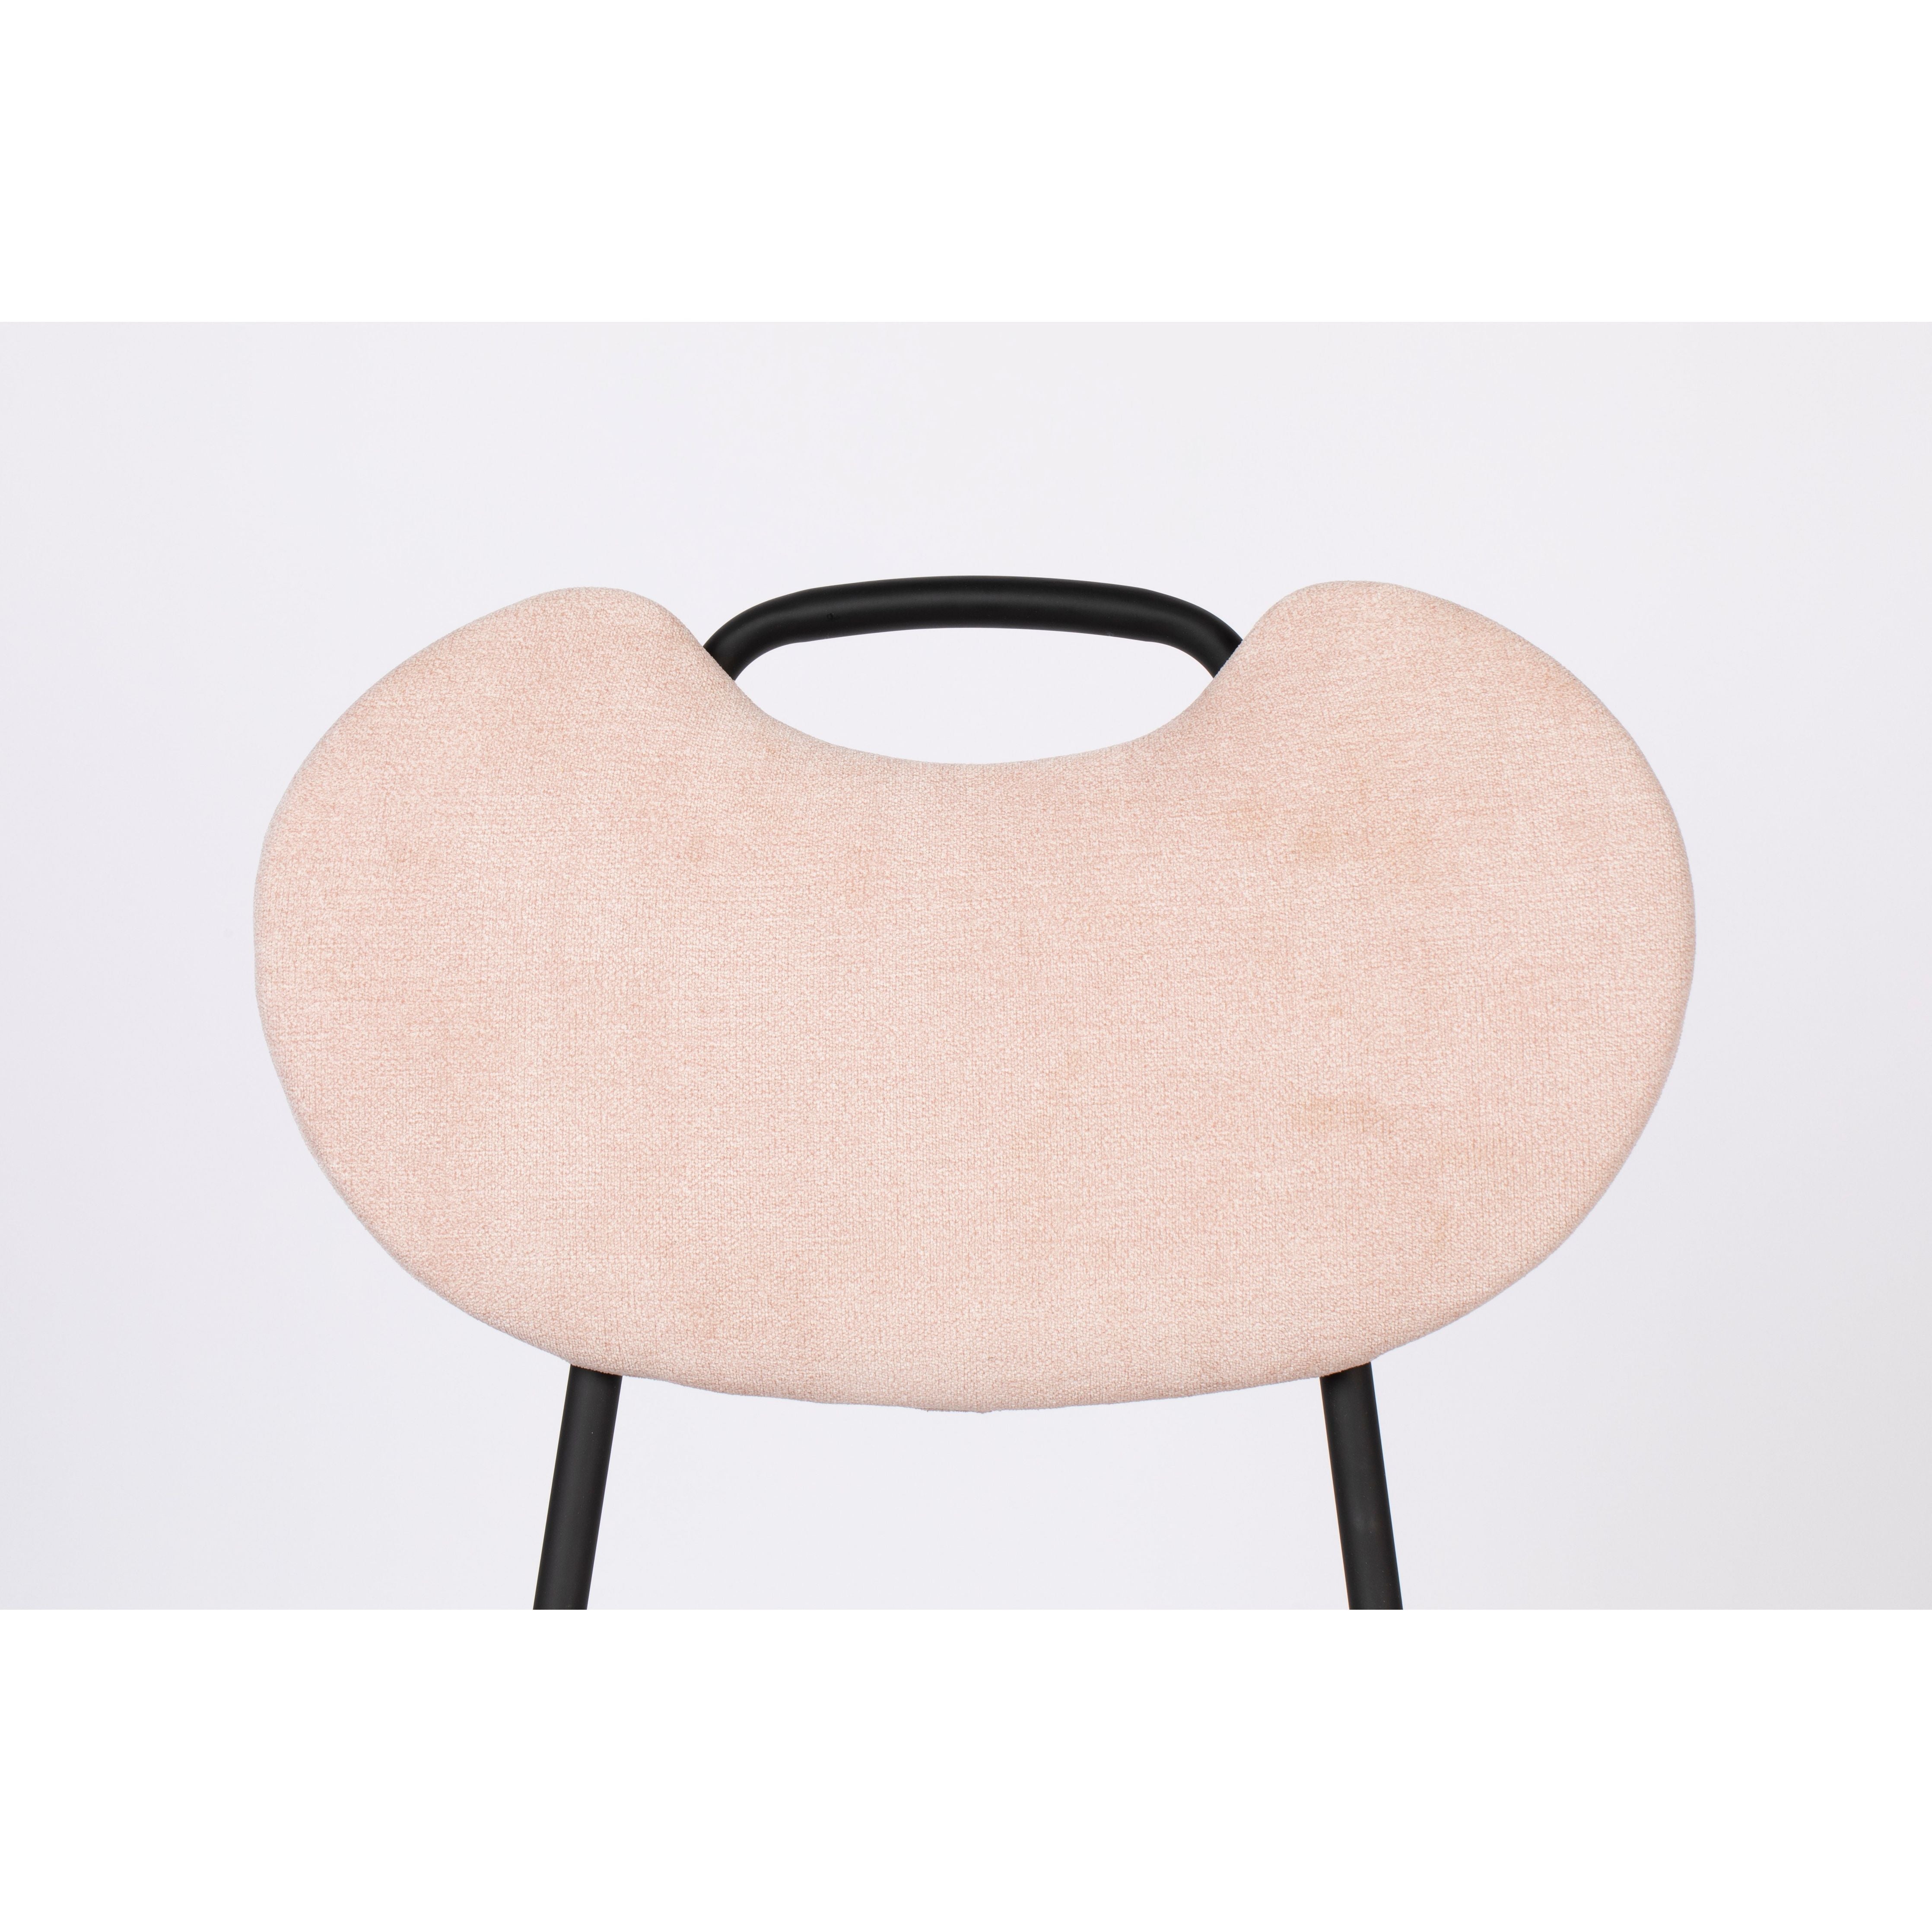 Chair aspen light pink